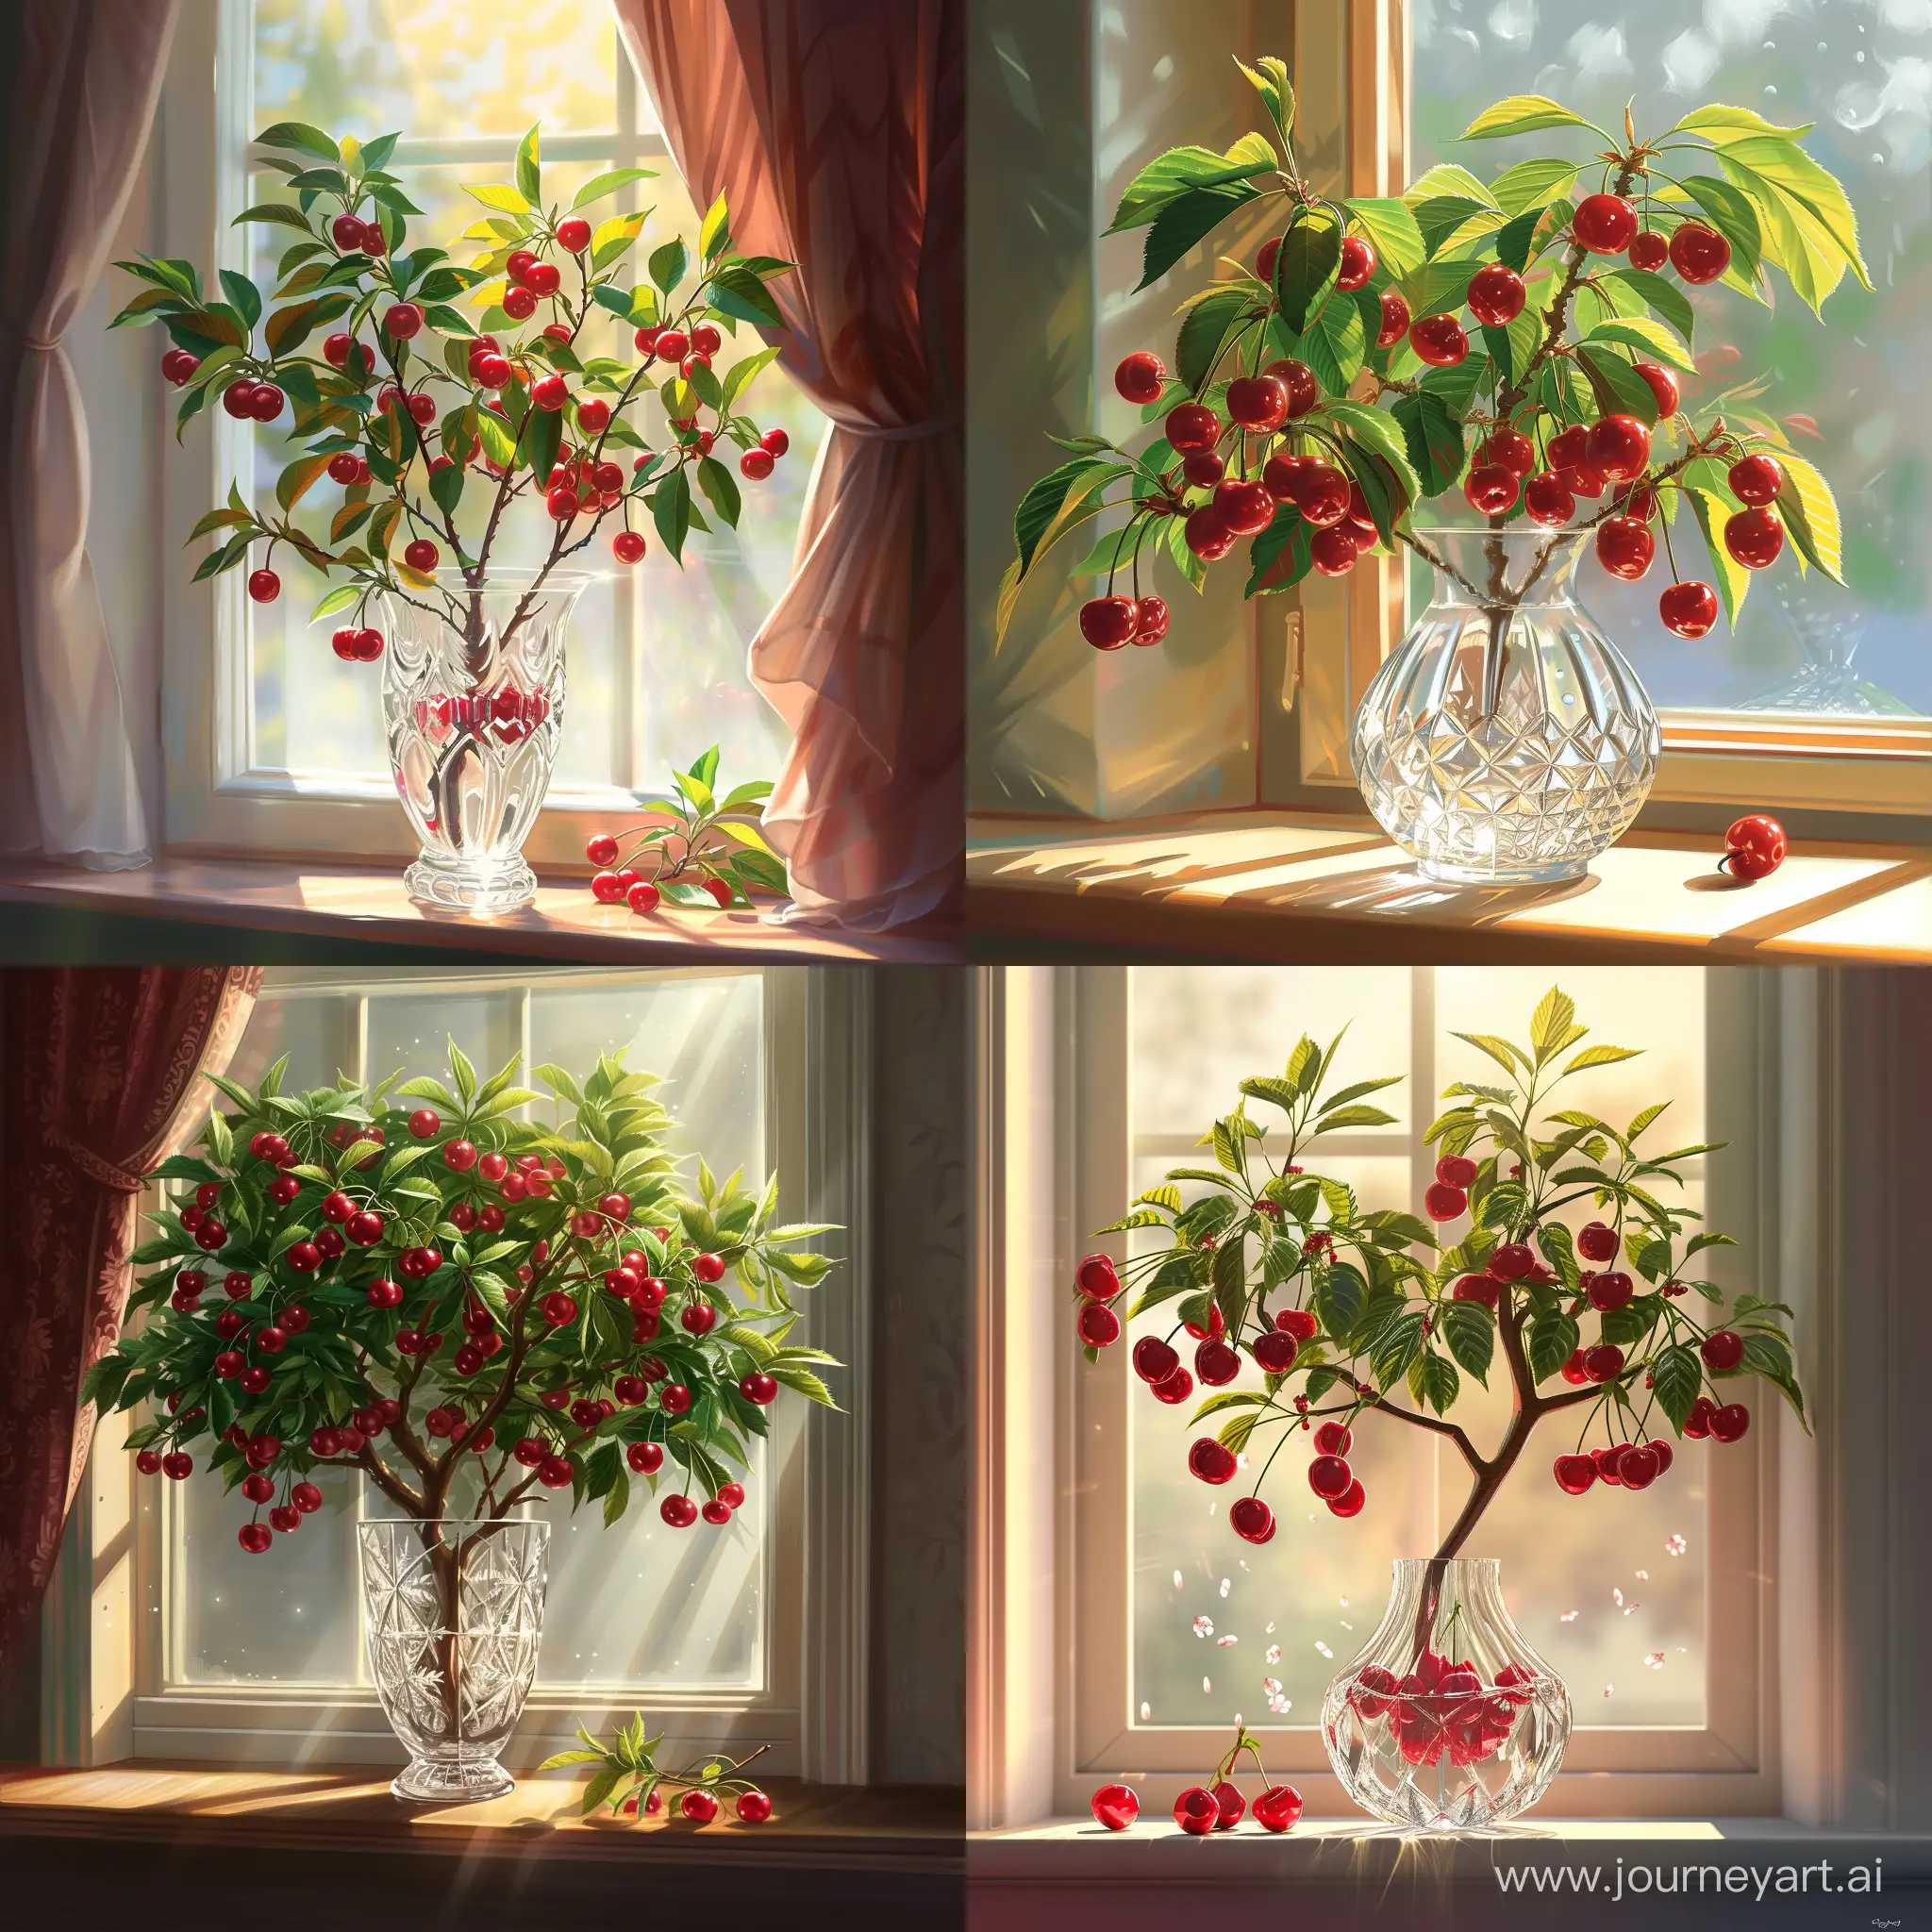 спелая вишня в хрустальной вазе на окне, солнечный свет, иллюстрация